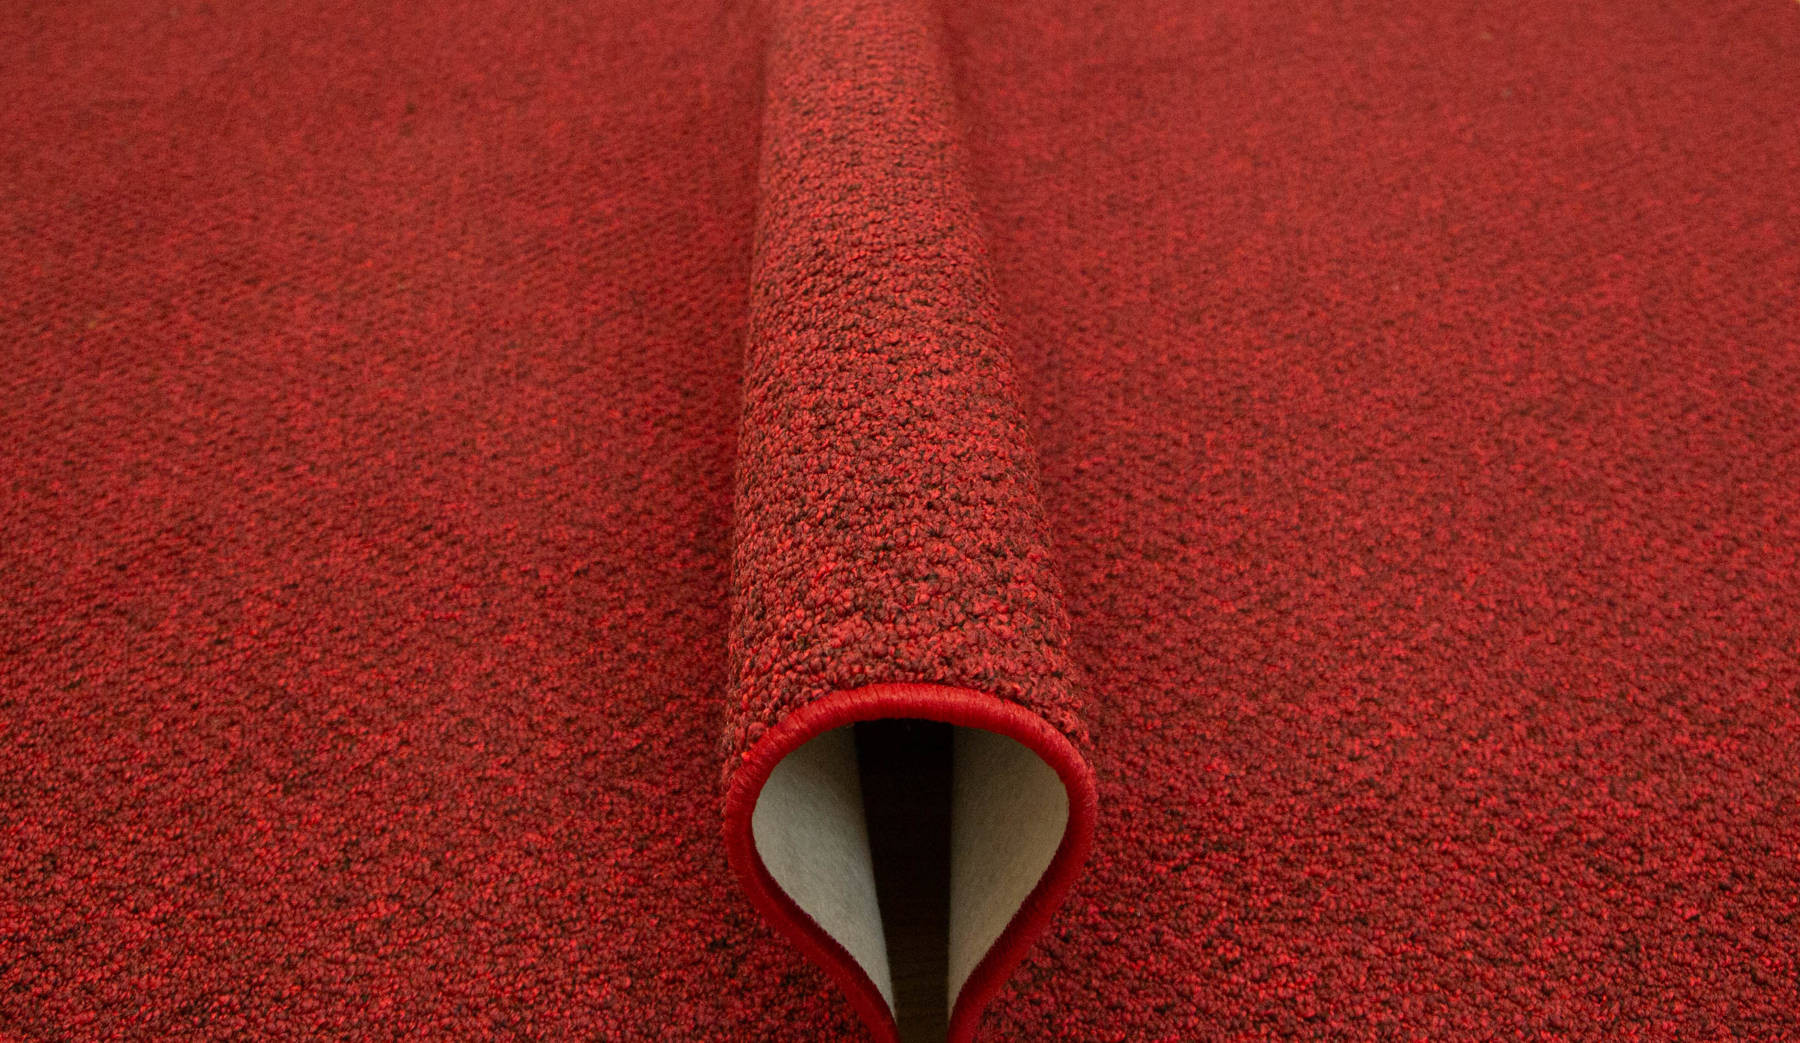 Metrážny koberec Stockholm 35 červený / čierny 